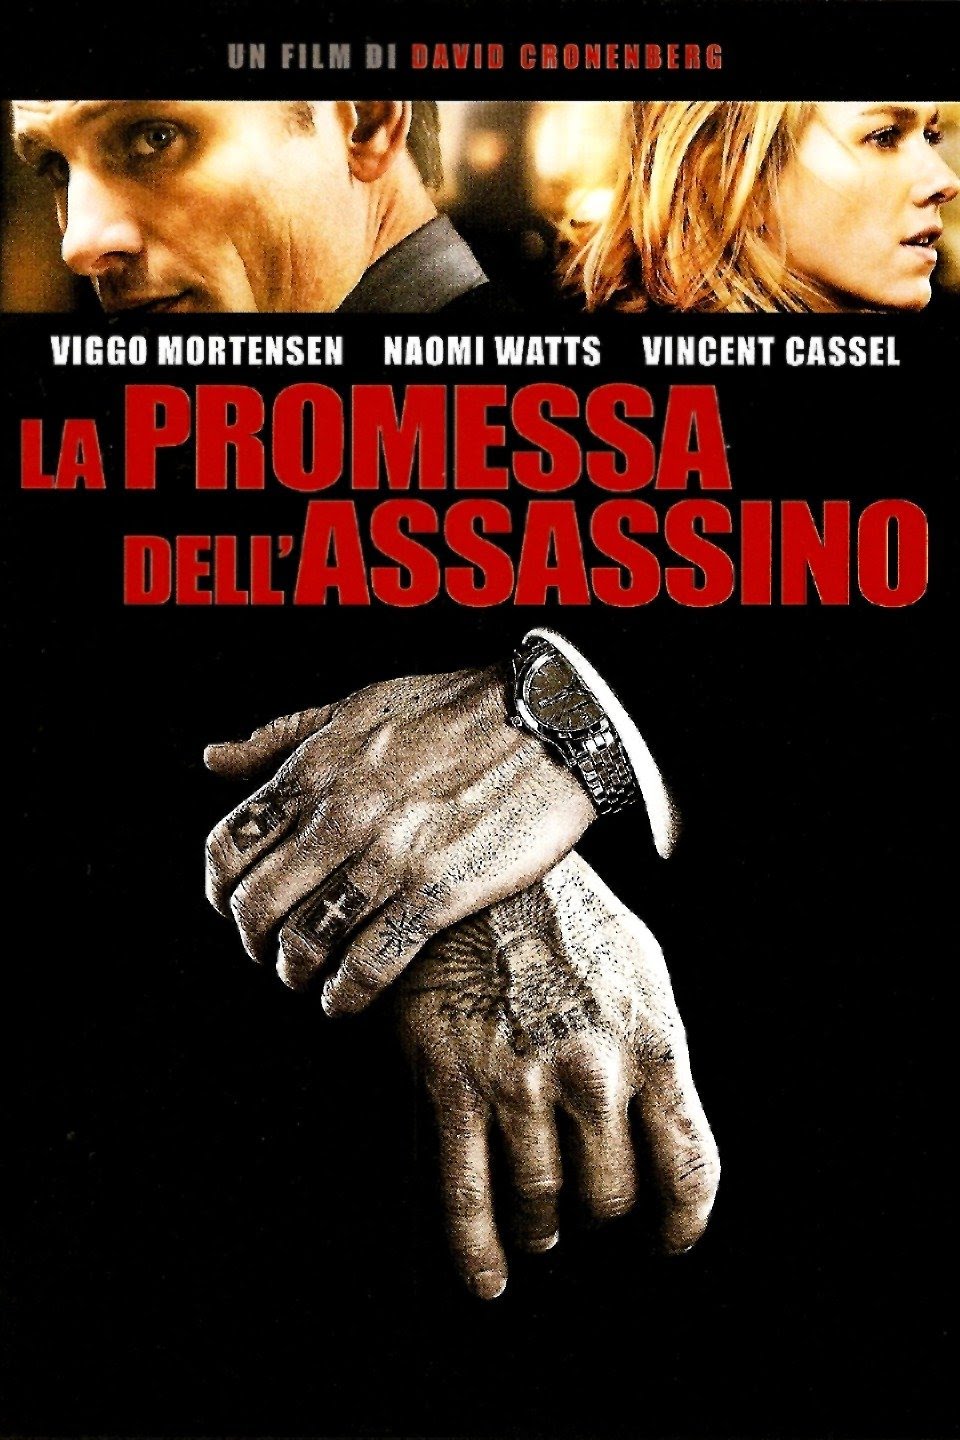 La promessa dell’assassino [HD] (2007)